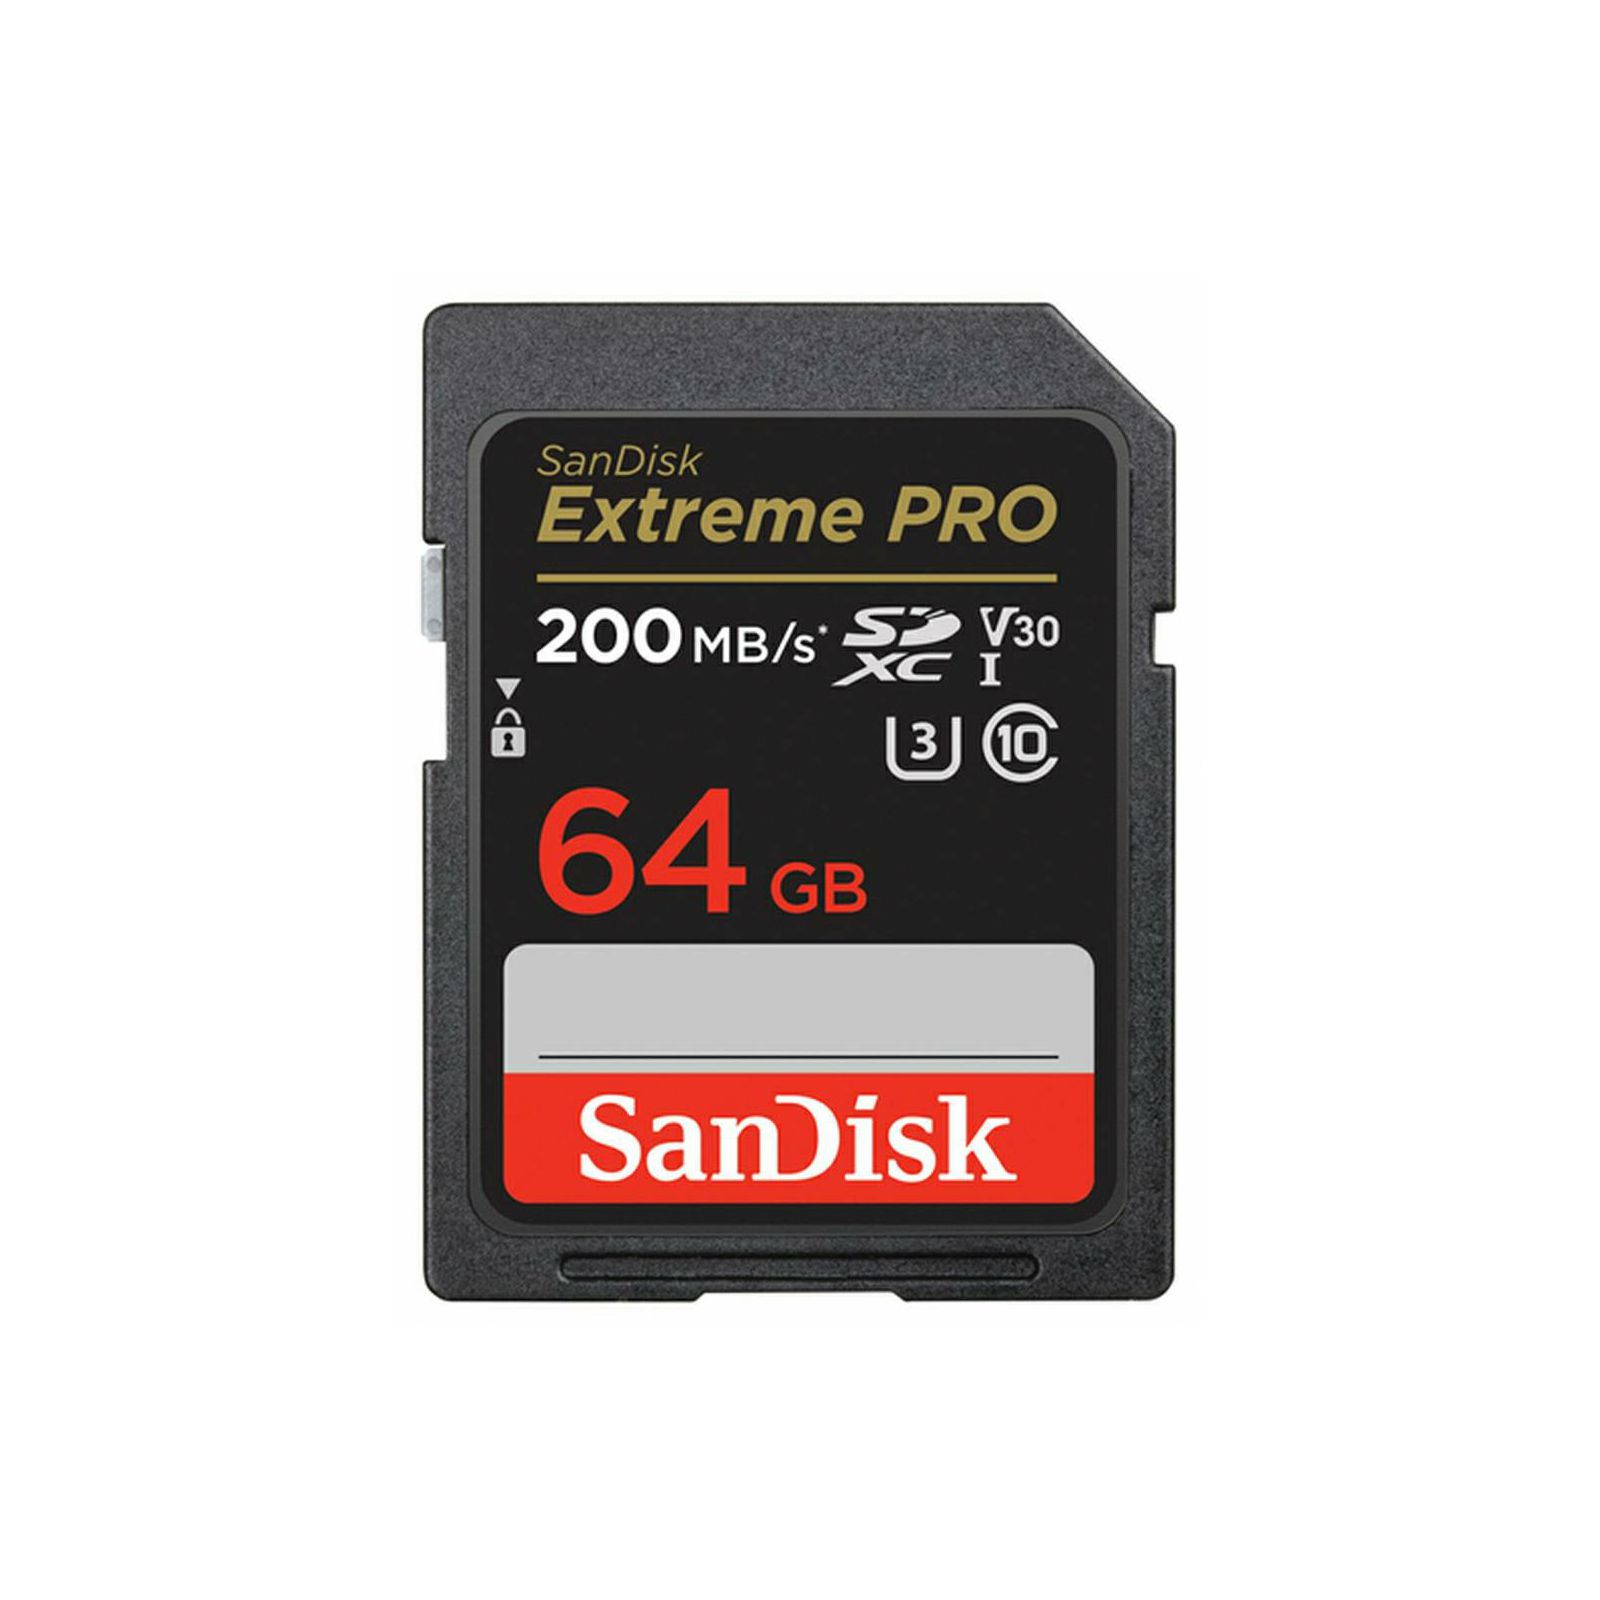 SanDisk SD 64GB 200MB/s Extreme Pro V30 UHS-I U3 memorijska kartica (SDSDXXU-064G-GN4IN)